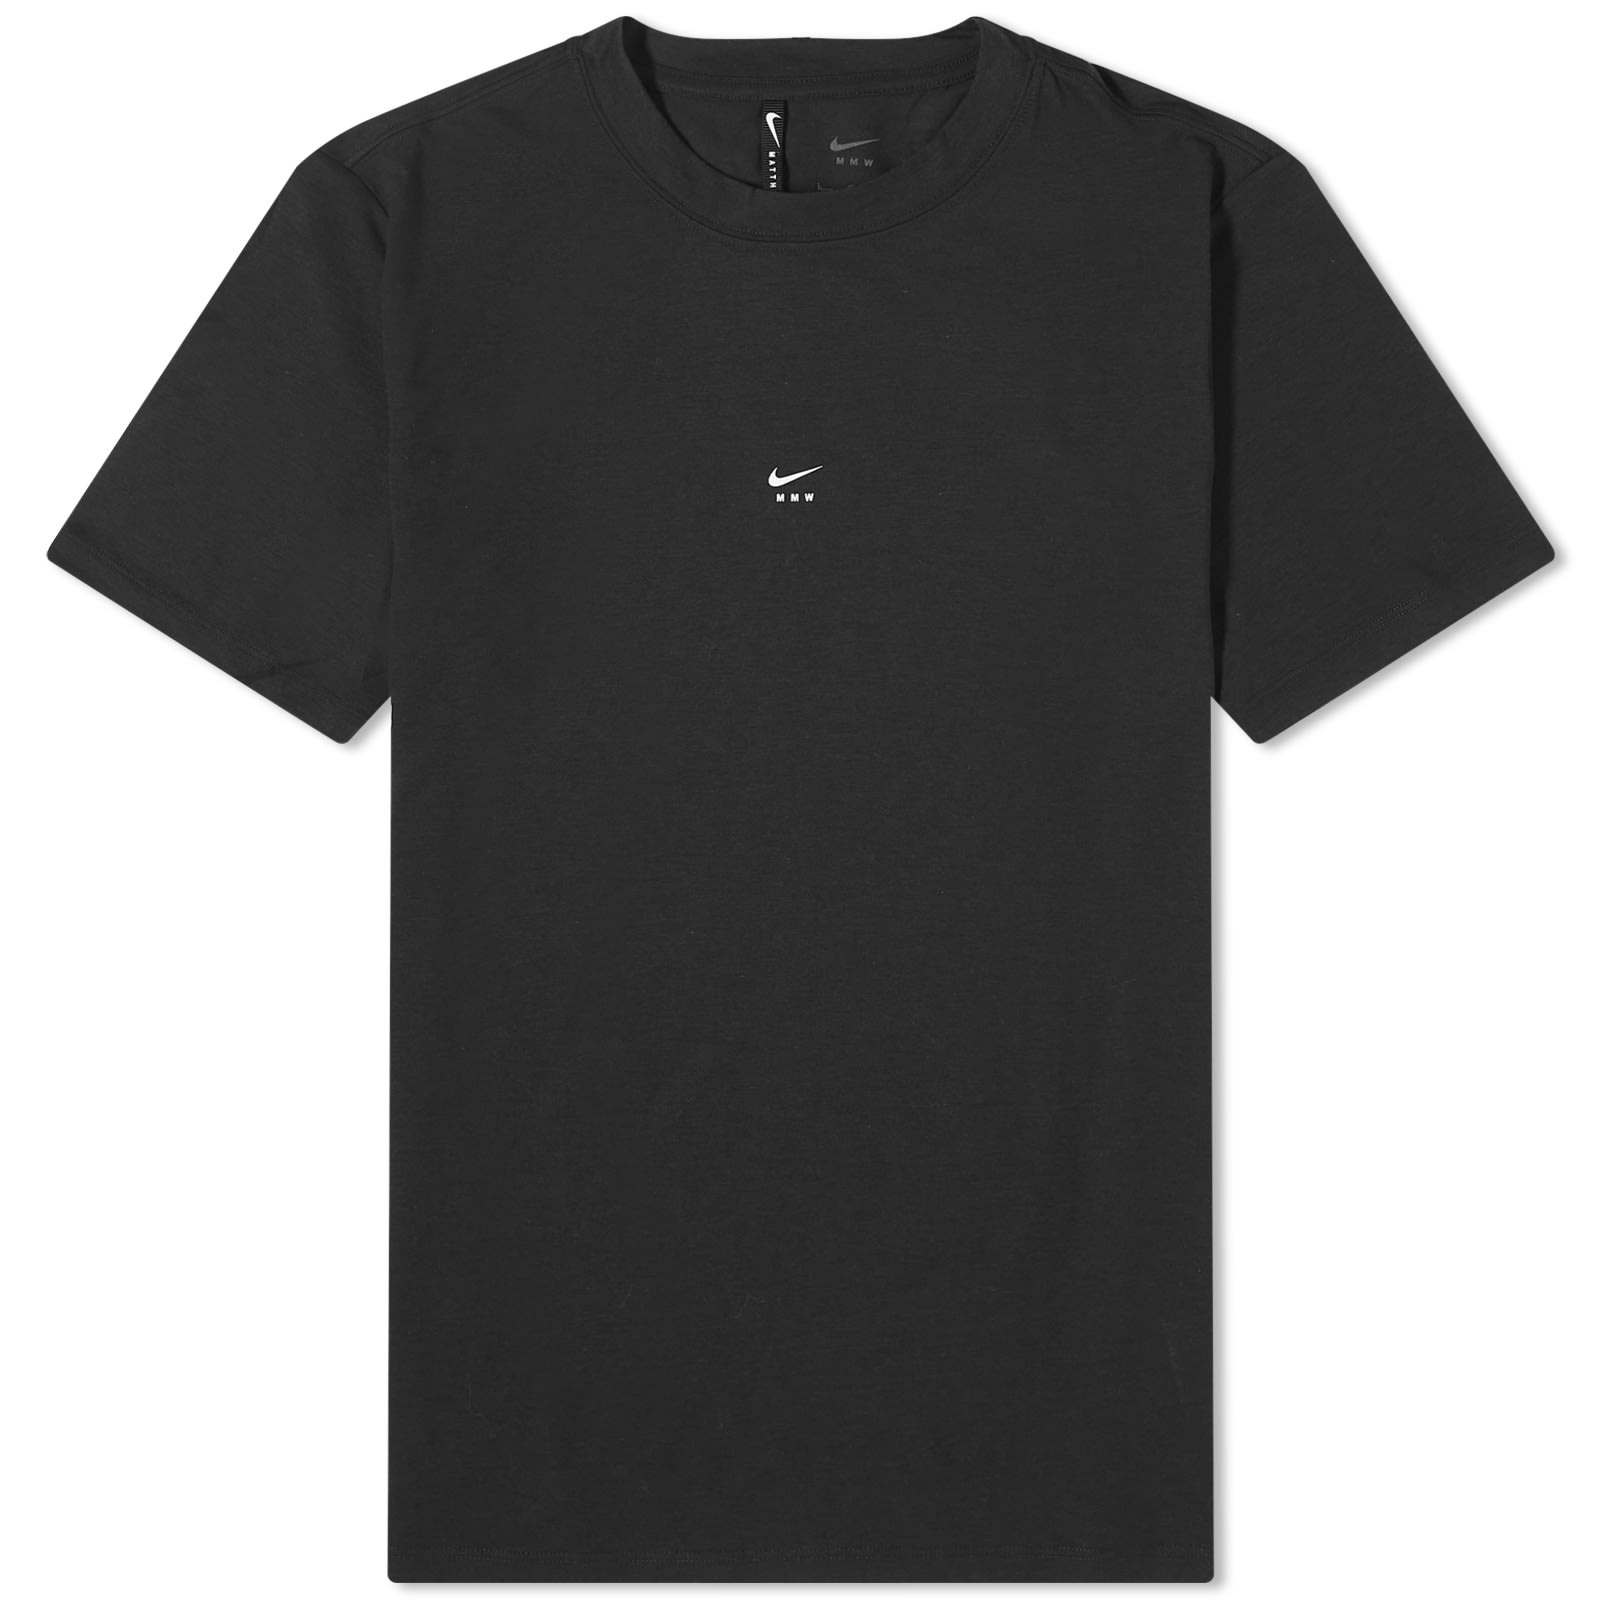 Nike x Mmw NRG Short Sleeve Top - 1